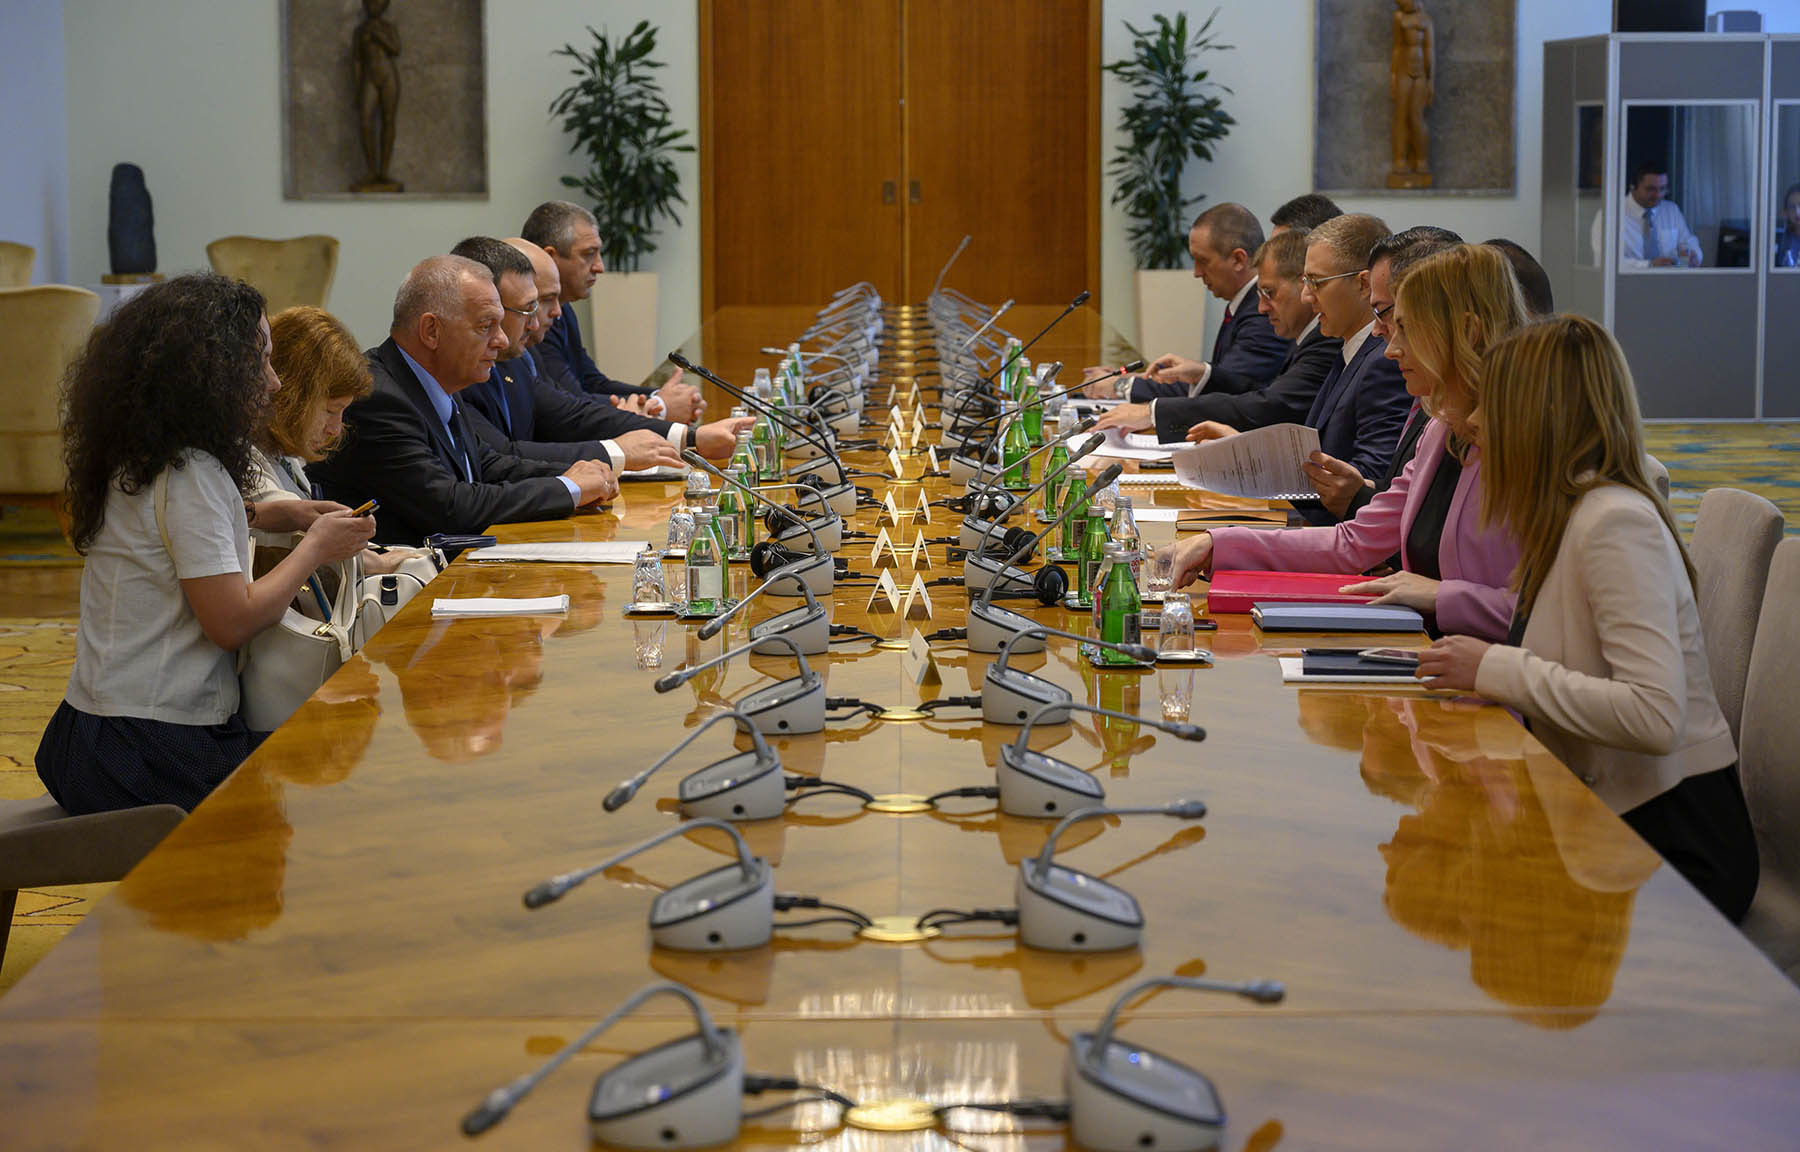 Sporazum o saradnji Srbije i Bugarske u oblasti vanrednih situacija